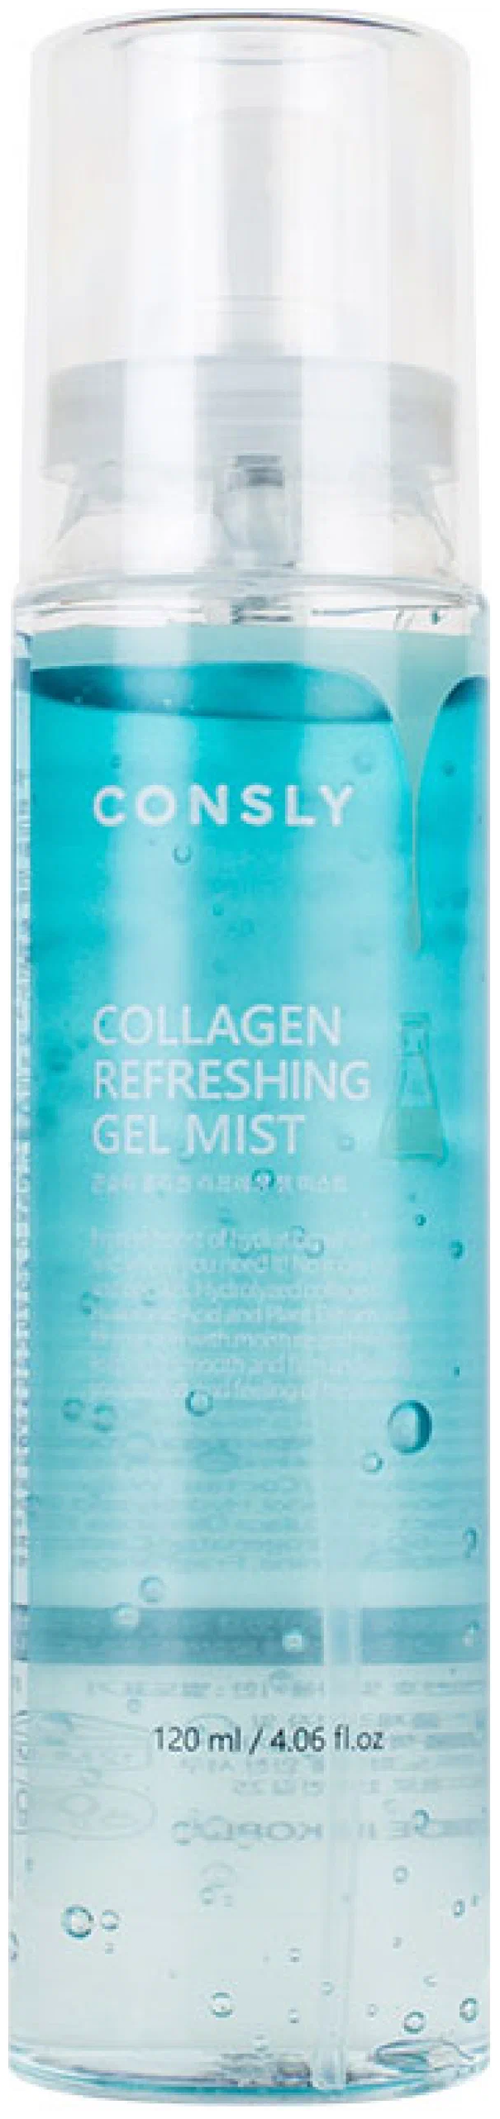 Consly Collagen Refreshing Gel Mist Освежающий гель-мист для лица с коллагеном, 120 мл